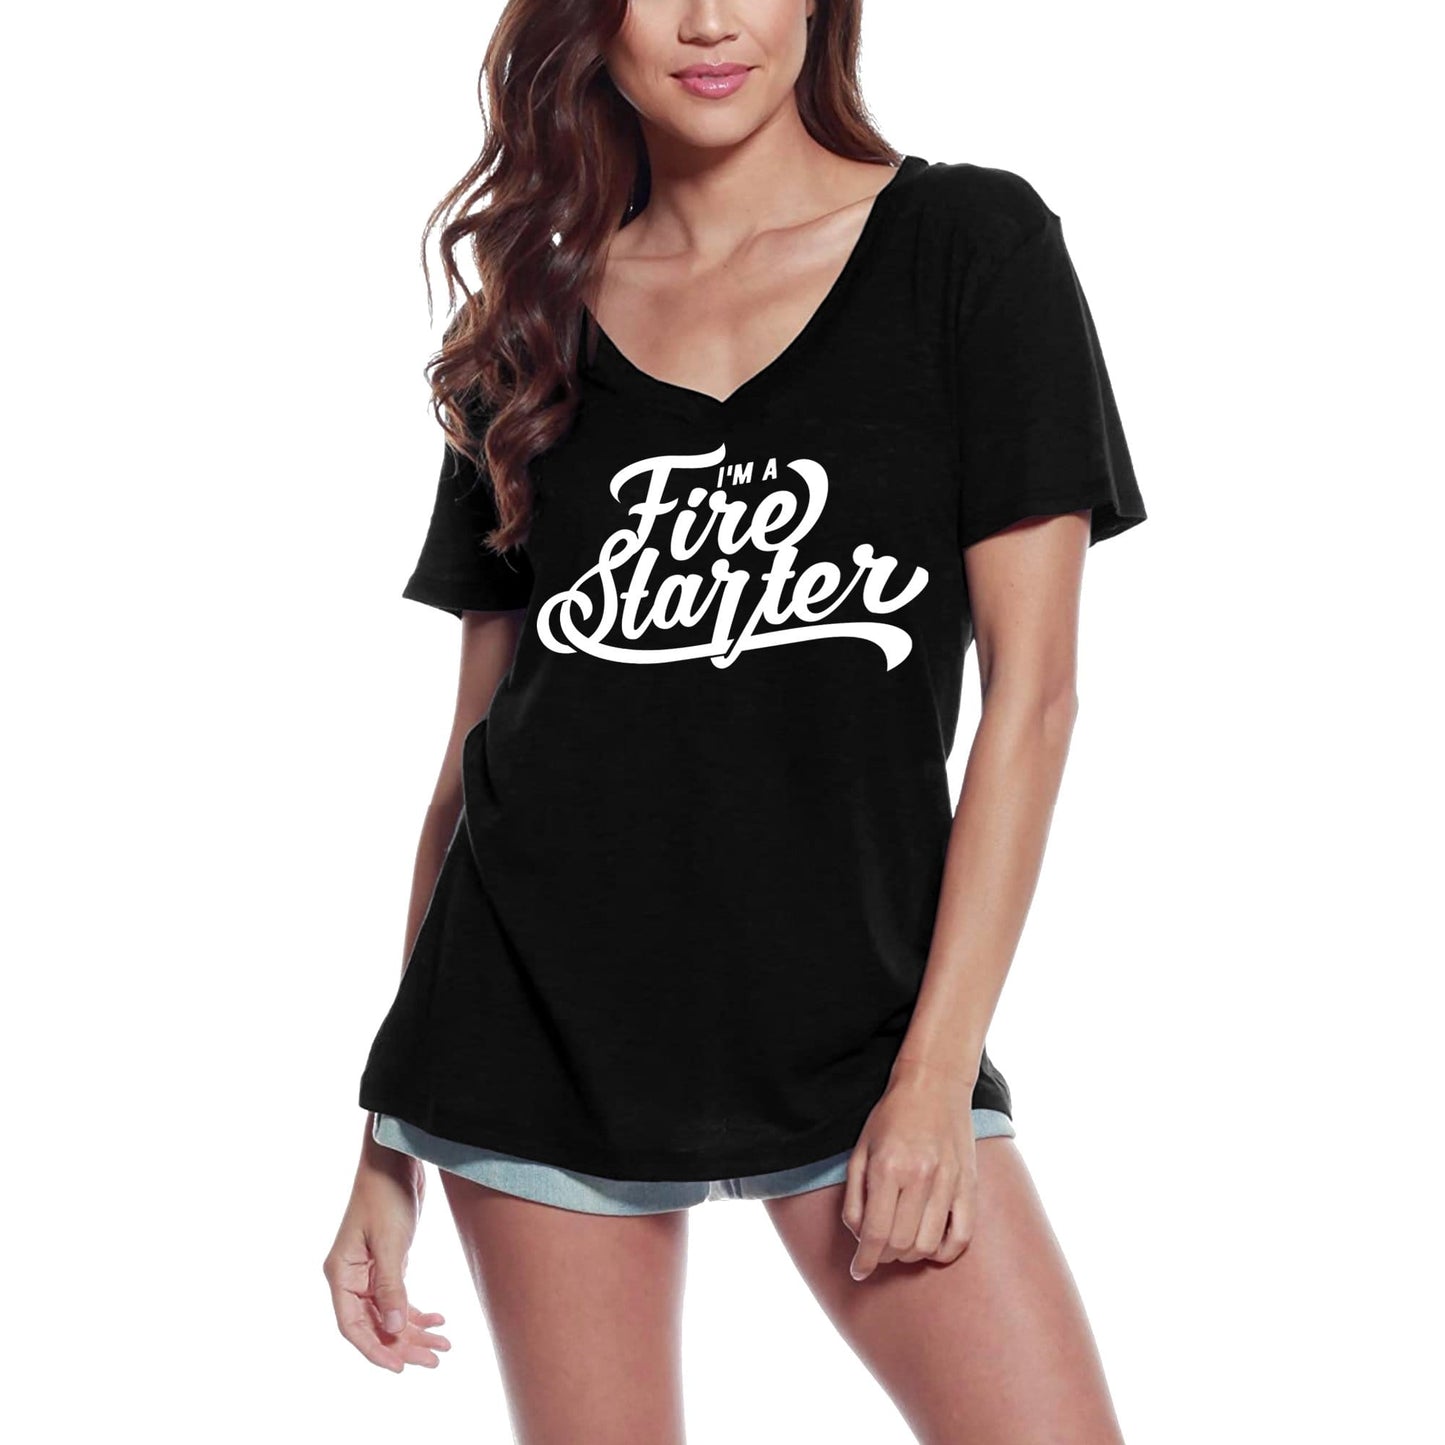 ULTRABASIC Women's T-Shirt I'm A Fire Starter - Motivational Slogan Graphic Tee